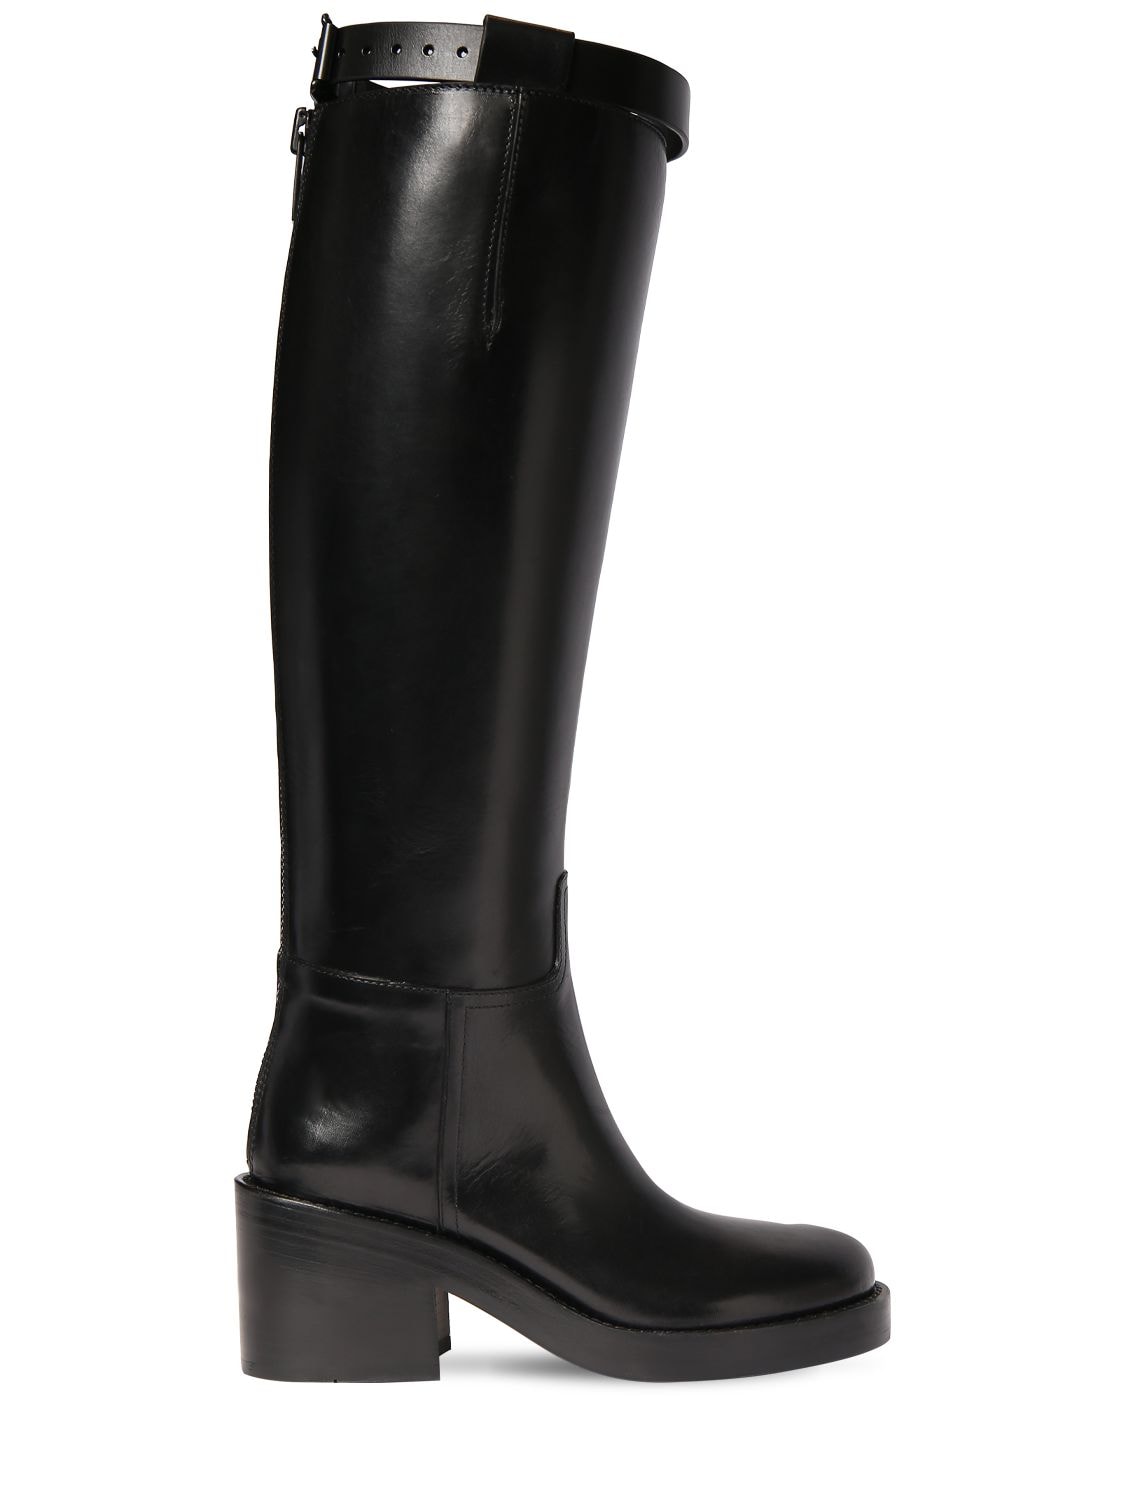 ANN DEMEULEMEESTER 50mm Stan Leather Tall Boots | Smart Closet